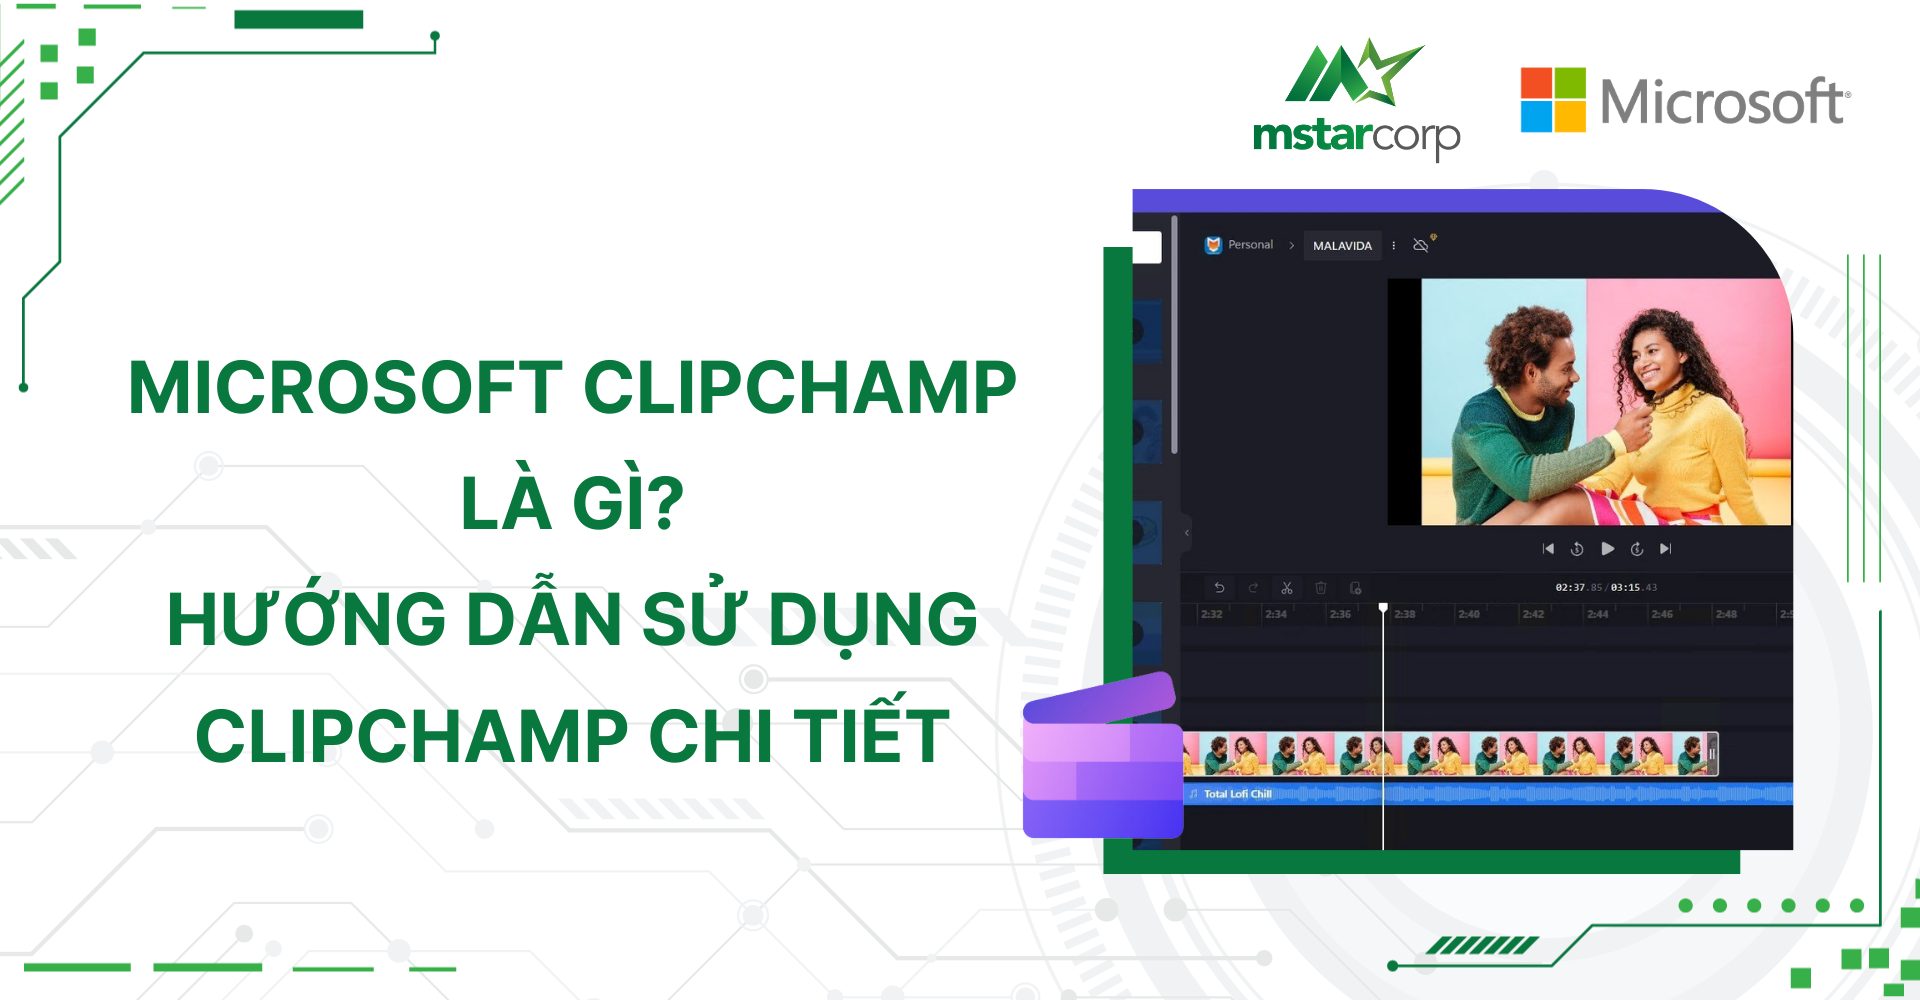 Microsoft Clipchamp là gì? Hướng dẫn sử dụng Clipchamp chi tiết